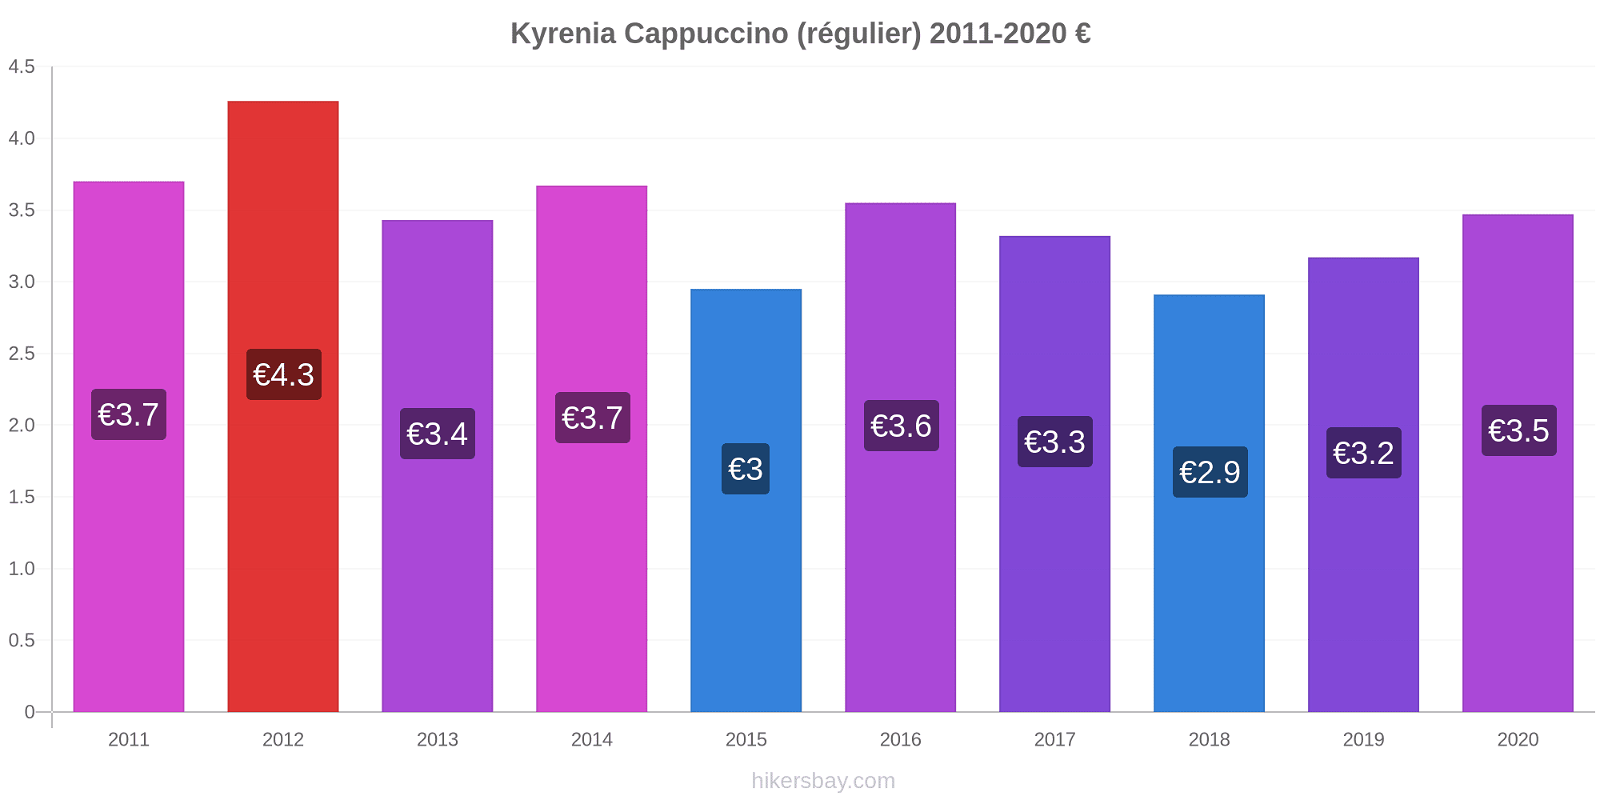 Kyrenia changements de prix Cappuccino (régulier) hikersbay.com